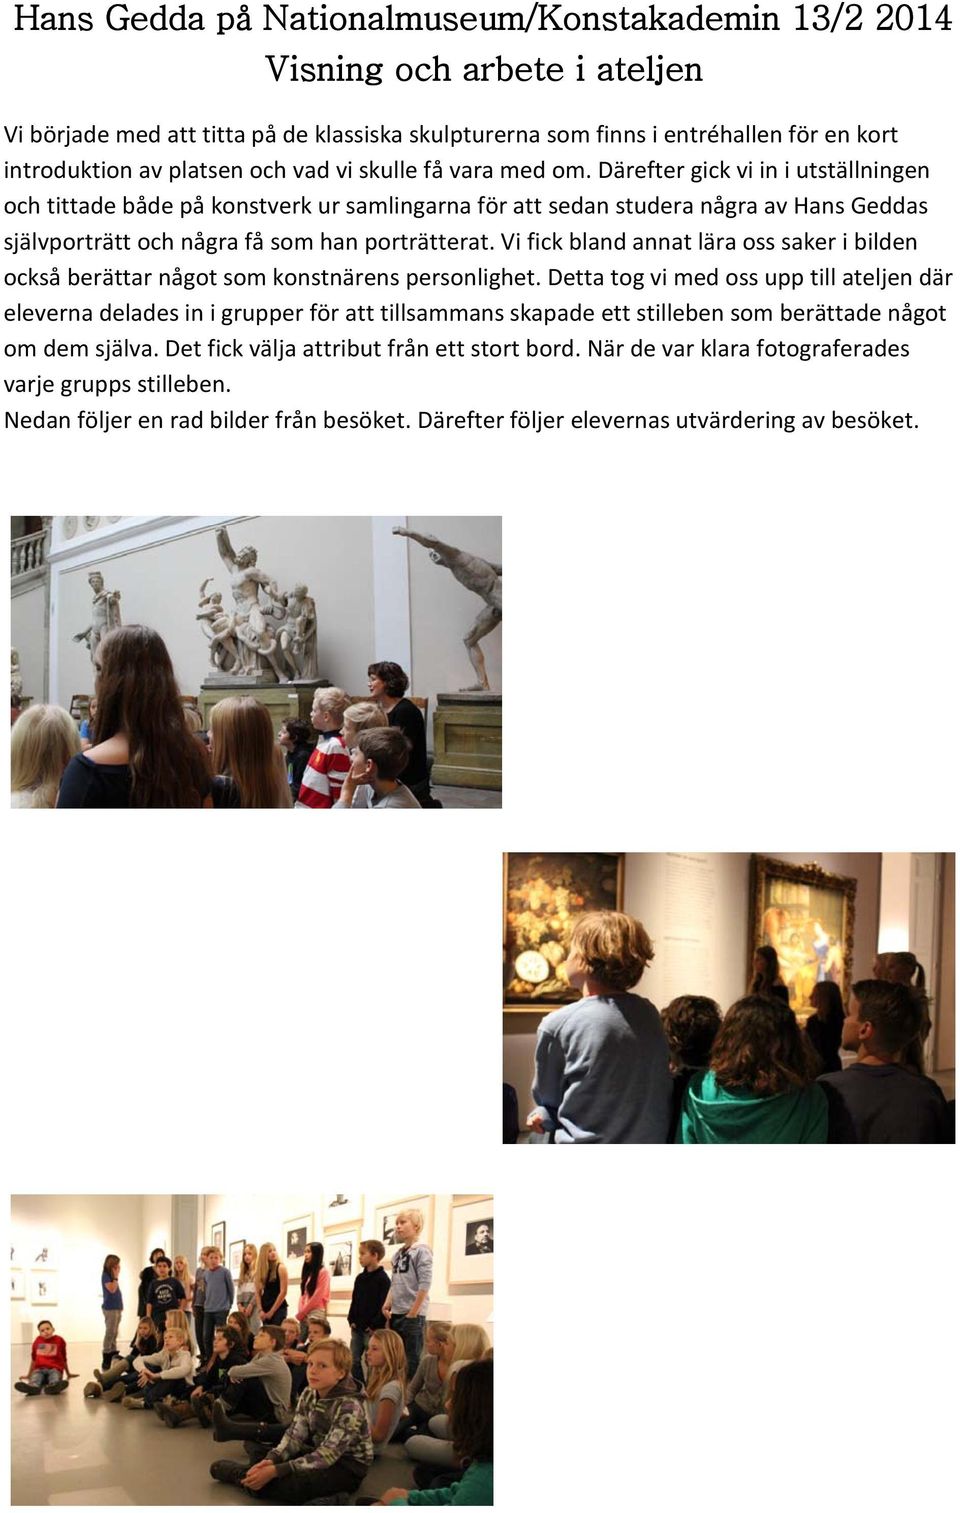 Därefter gick vi in i utställningen och tittade både på konstverk ur samlingarna för att sedan studera några av Hans Geddas självporträtt och några få som han porträtterat.